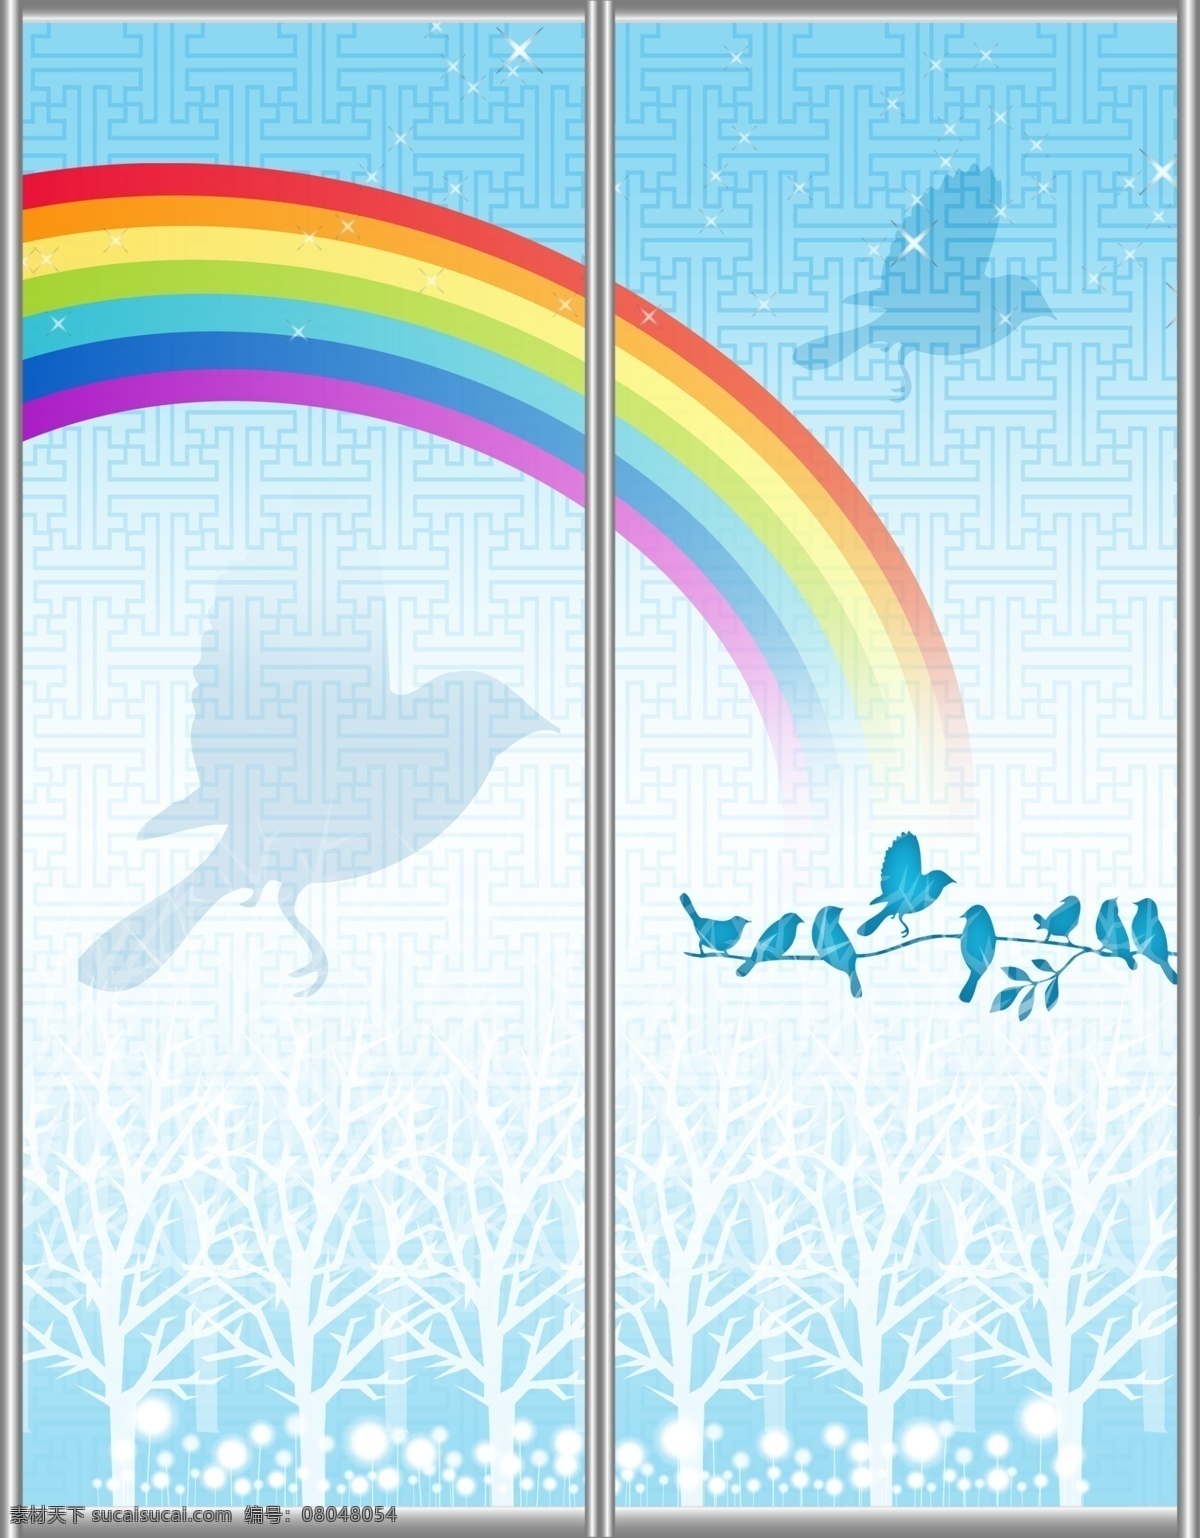 彩虹 广告设计模板 卡通 可爱 小鸟 小树 移门 移门图 图案 模板下载 移门图案 移门汇 枝头 源文件 家居装饰素材